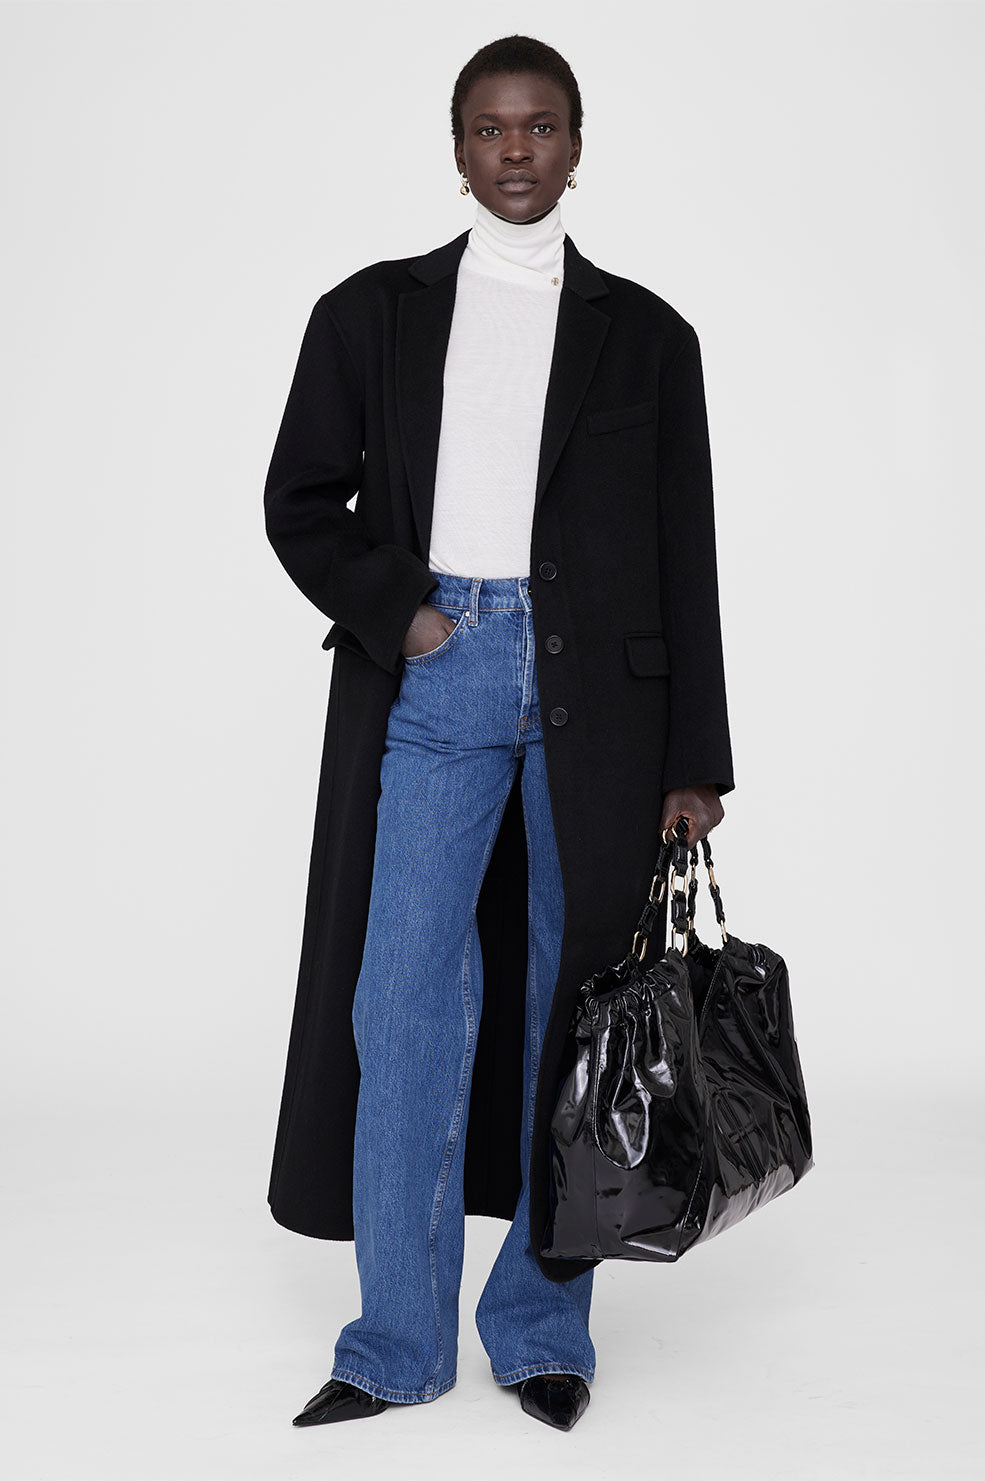 ANINE BING Quinn Coat - Black Cashmere Blend - On Model Front